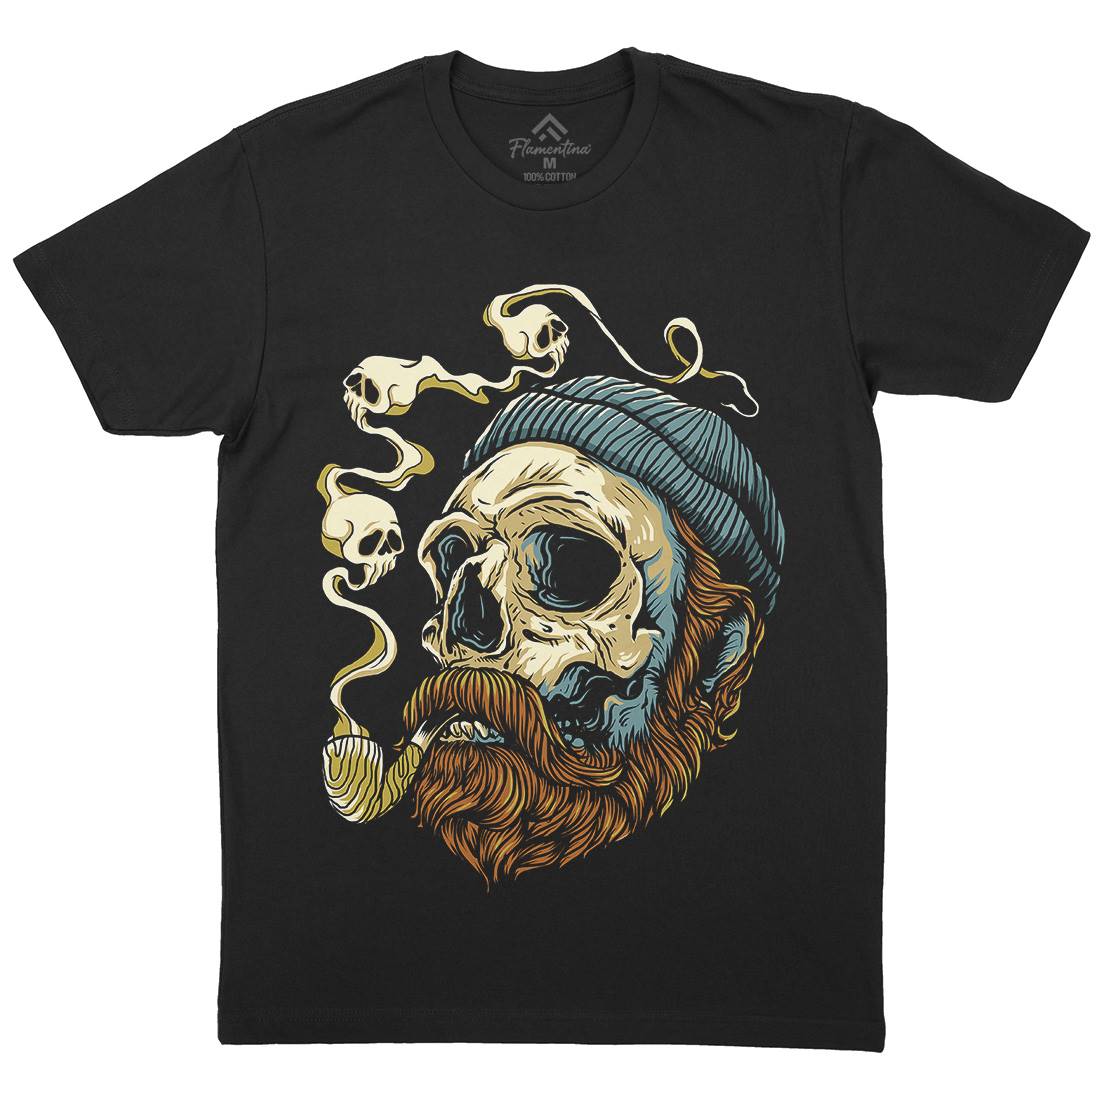 Sailor Skull Mens Organic Crew Neck T-Shirt Navy D074